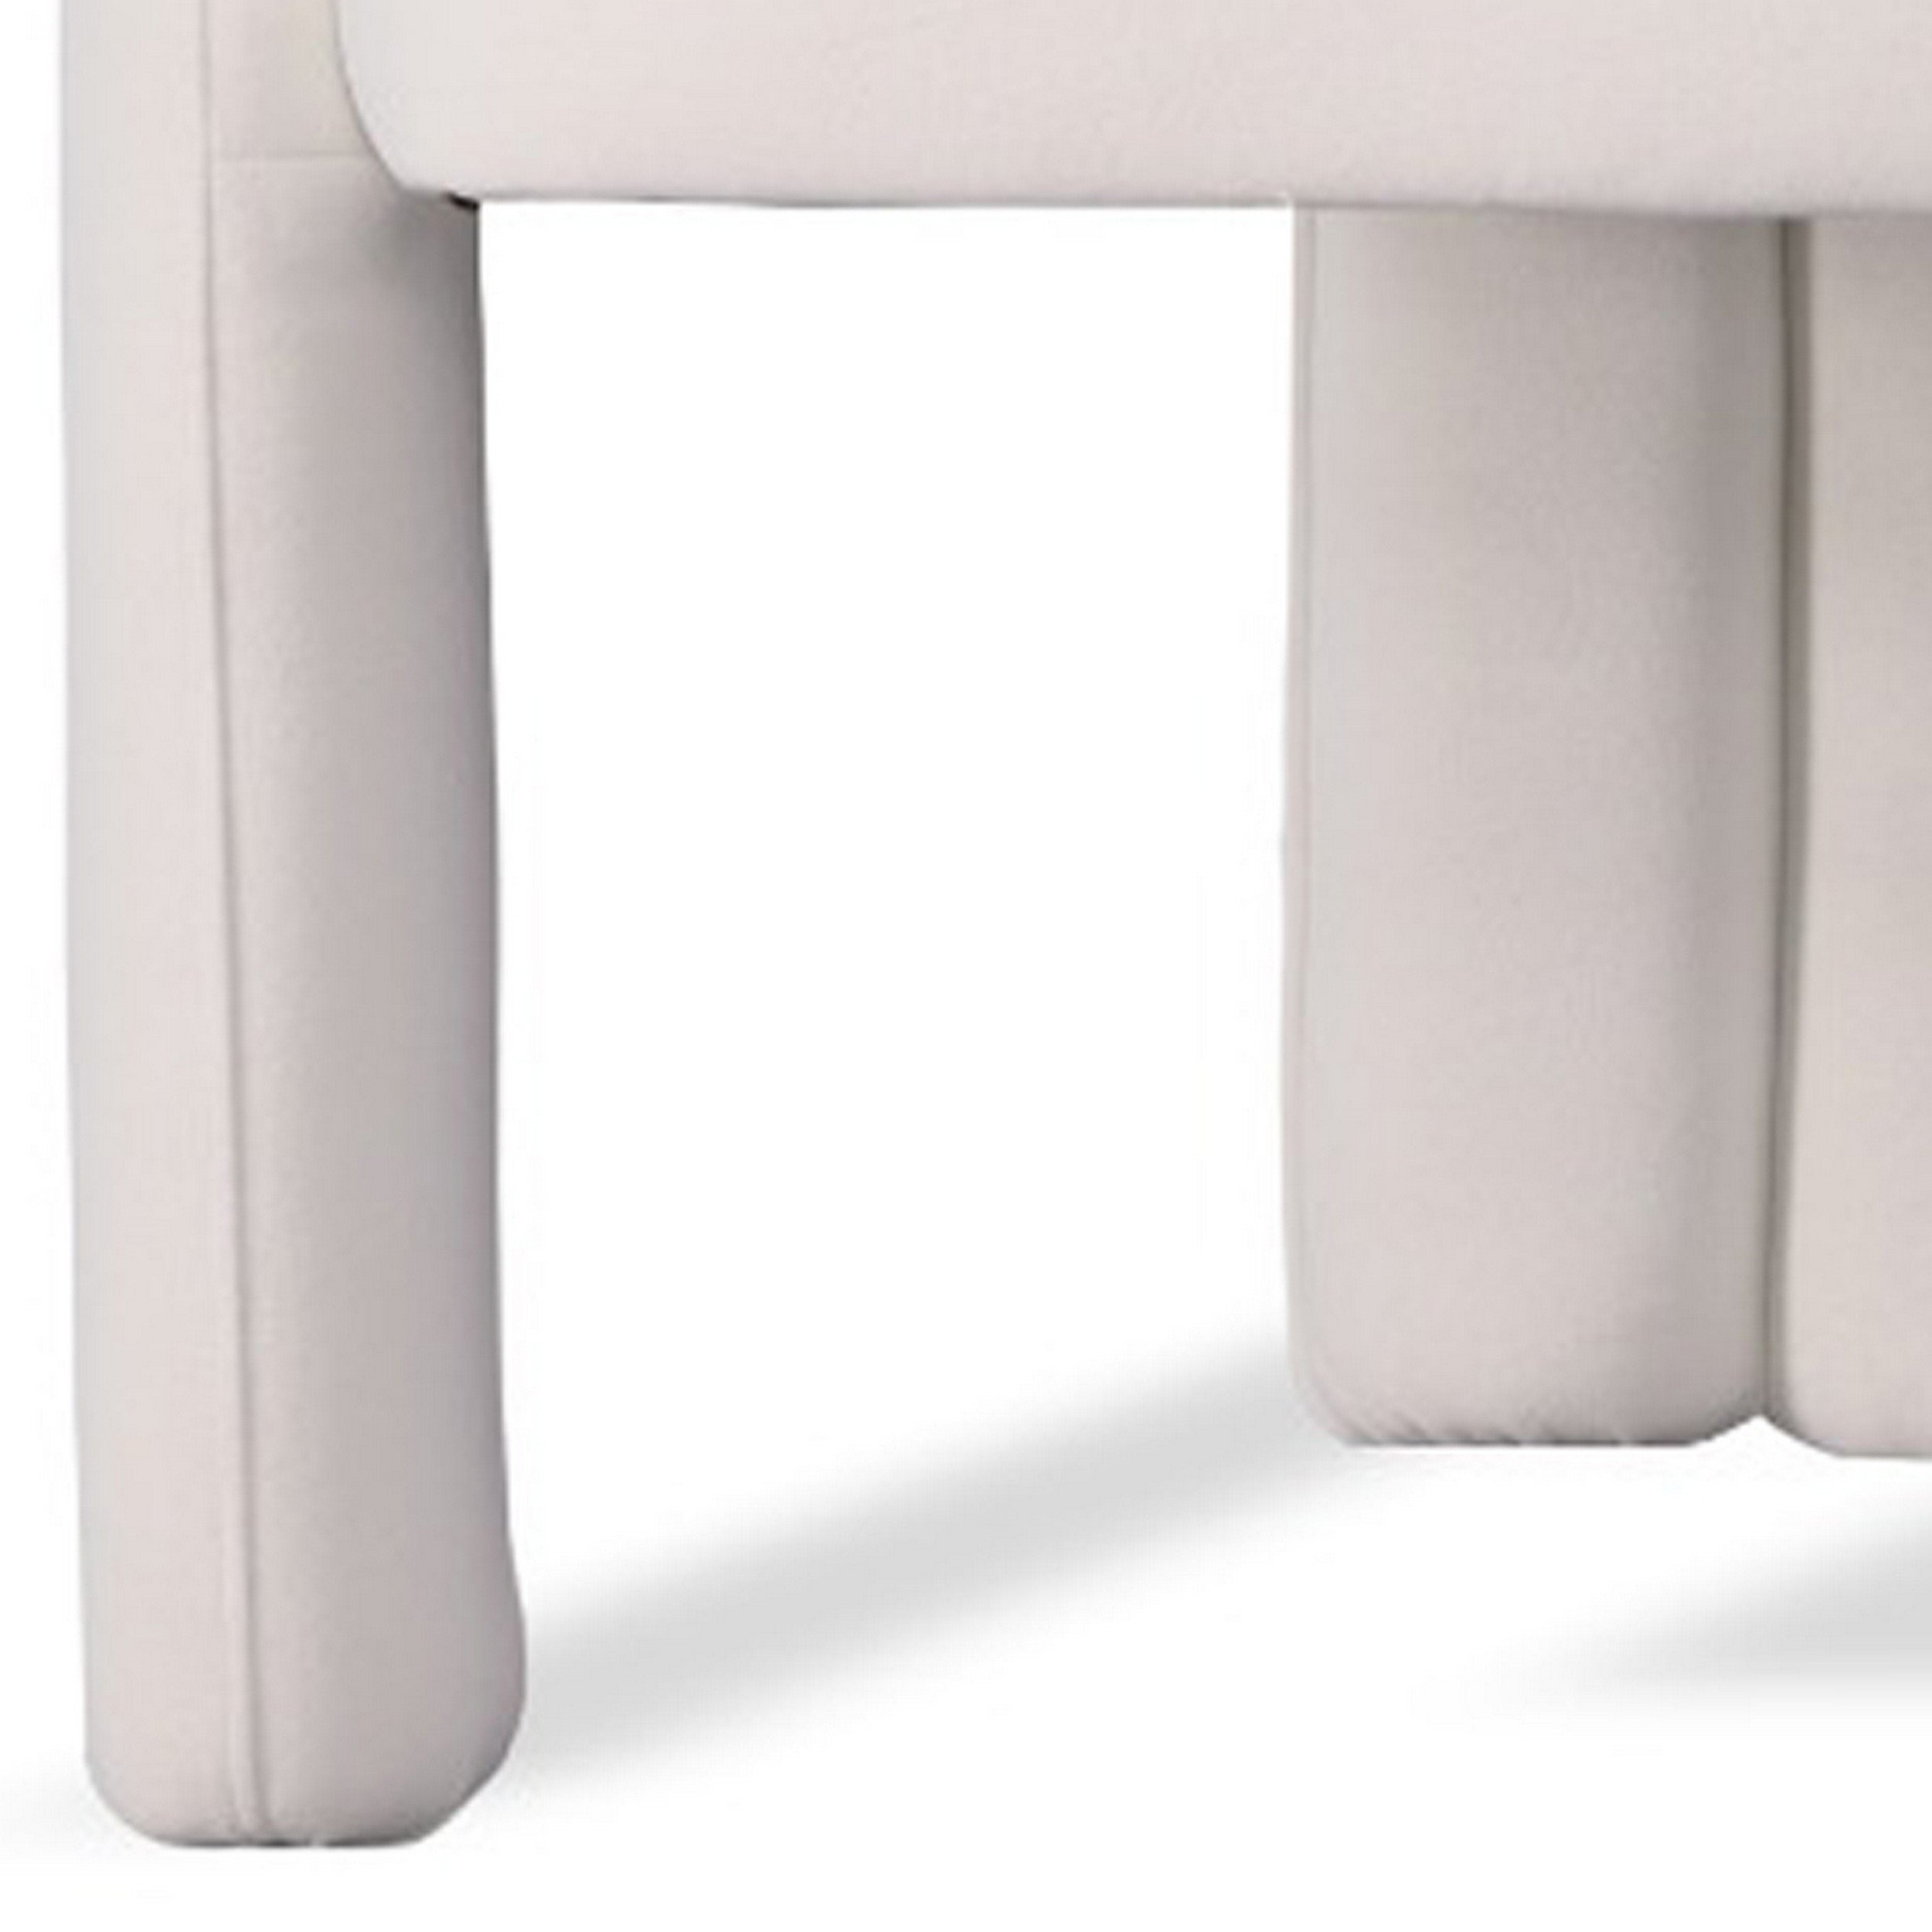 25 Inch Dining Chair, White Velvet, Curved Open Panels, Fully Upholstered - Saltoro Sherpi